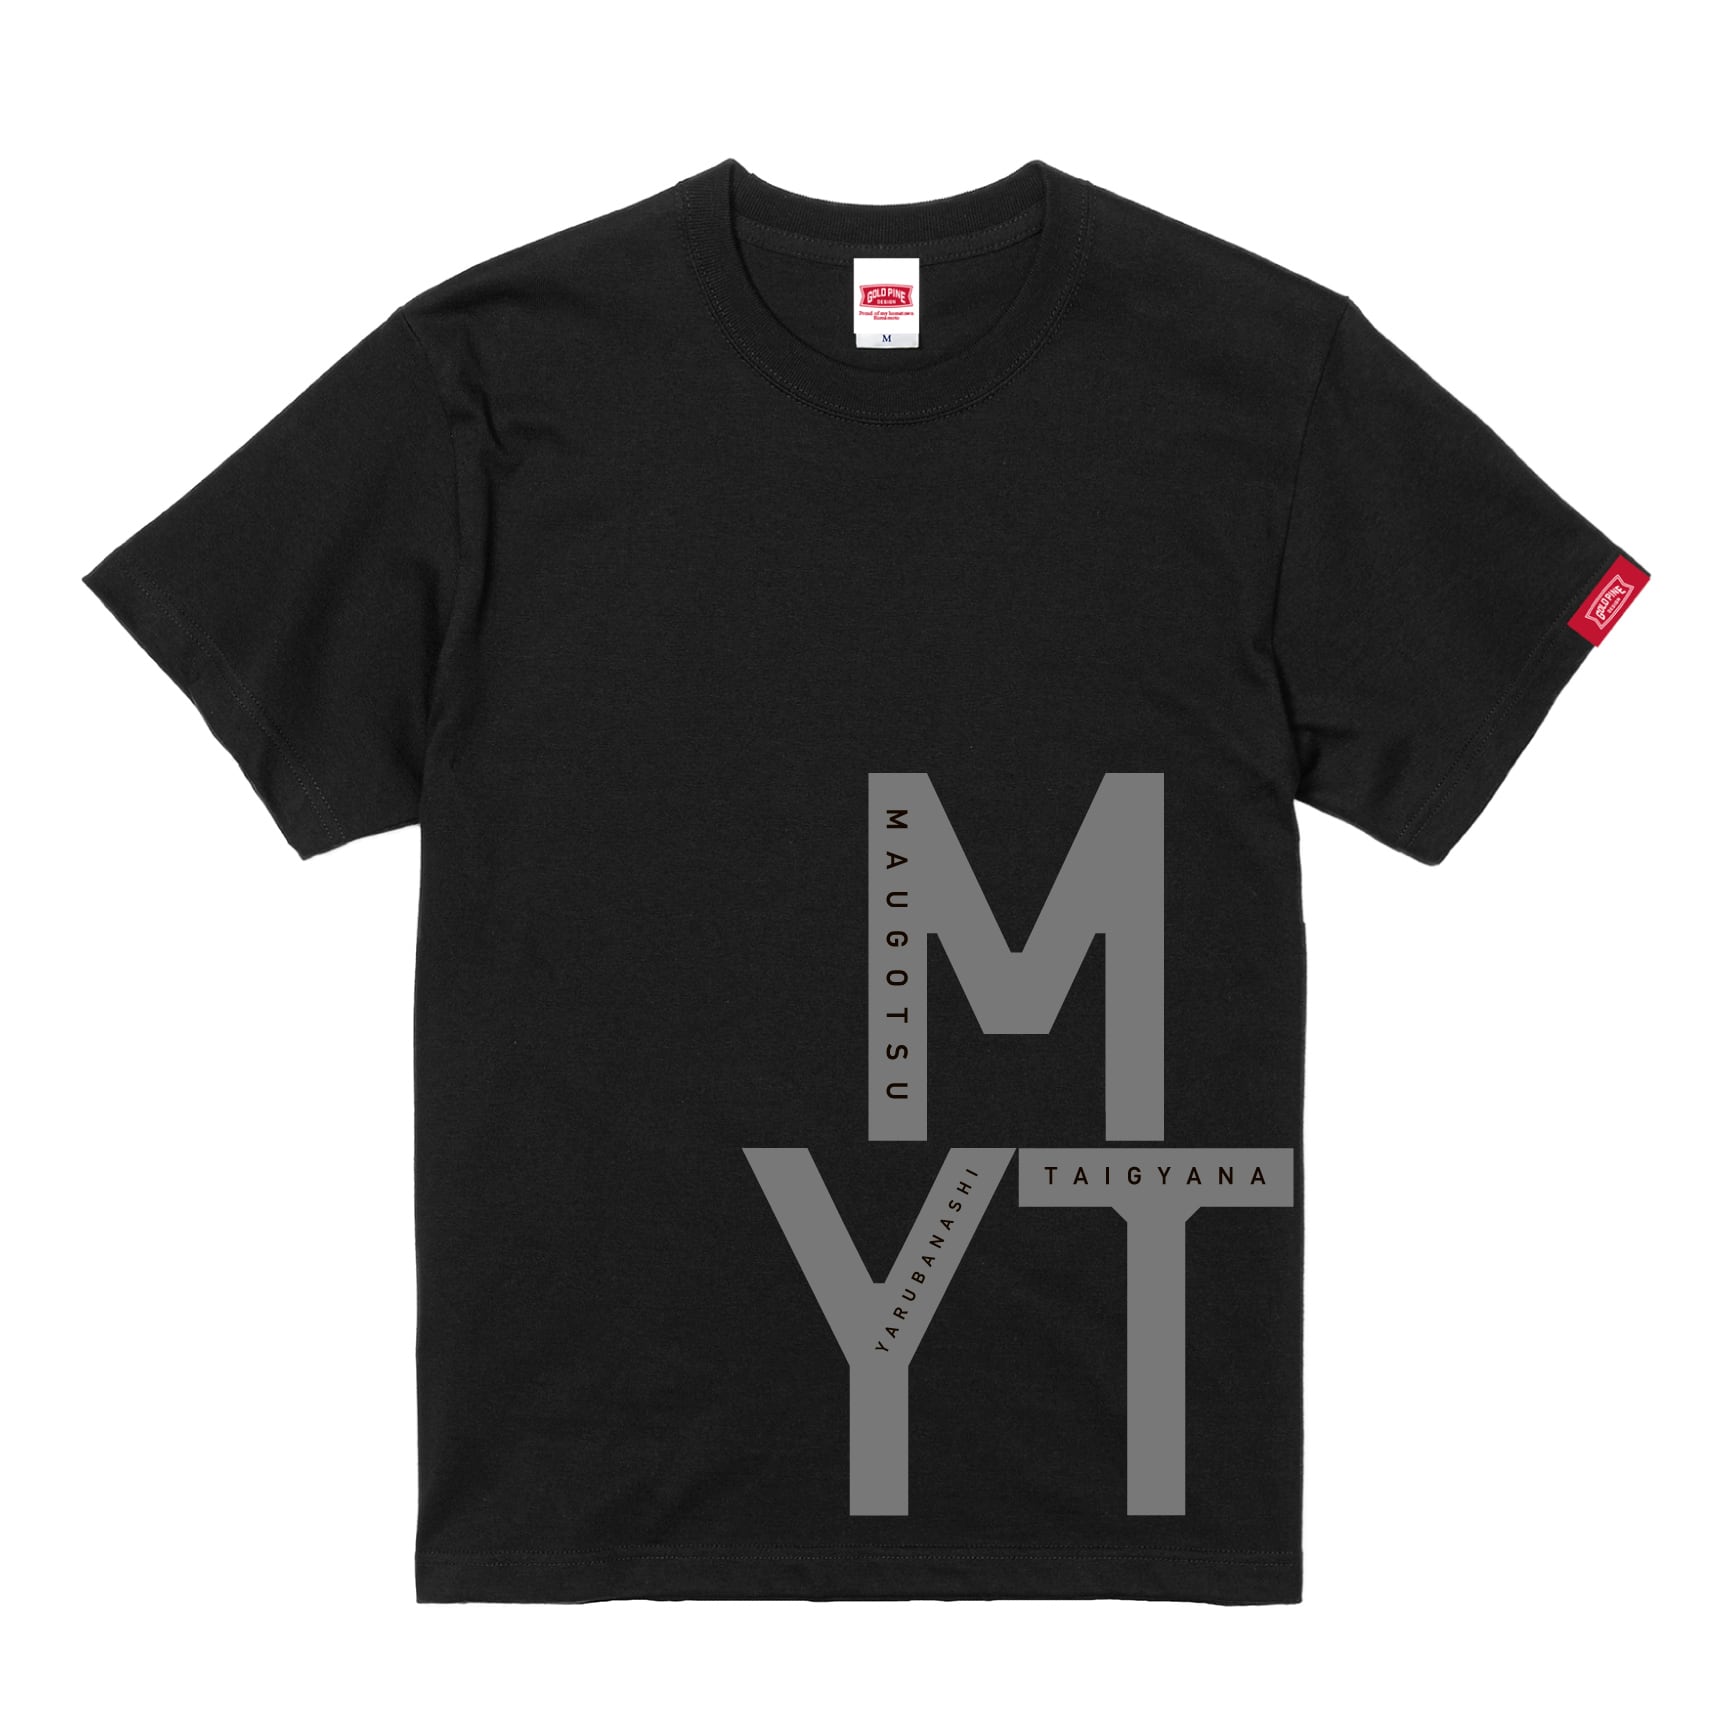 MYT-Tshirt【Adult】Black